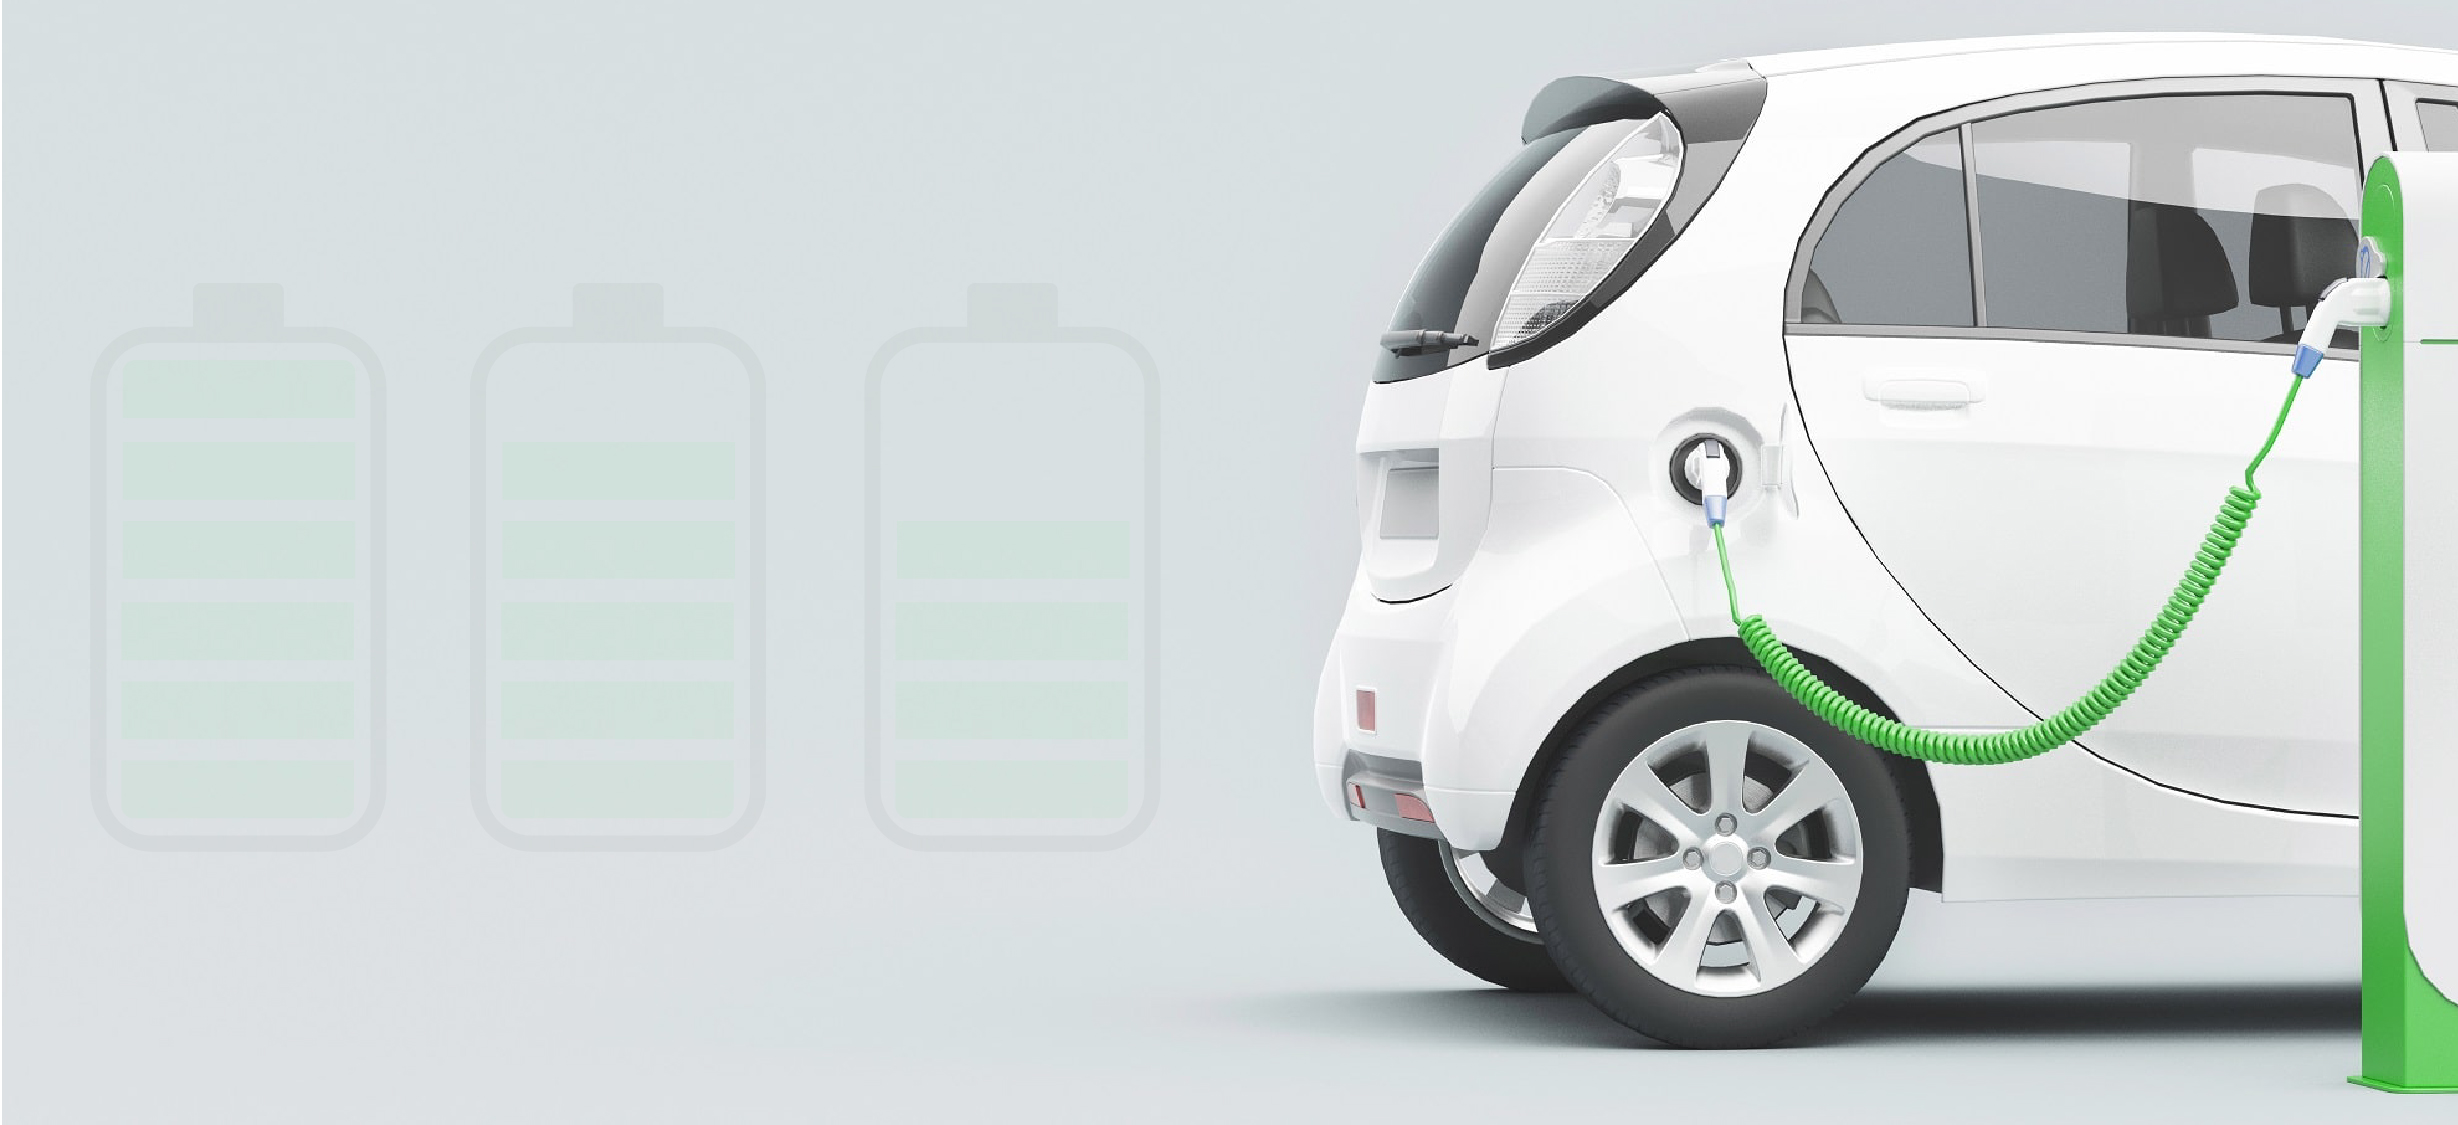 La solution de recharge idéale pour votre véhicule électrique, ce serait quoi ?.Dites-nous ce que cette solution doit vous apporter au quotidien